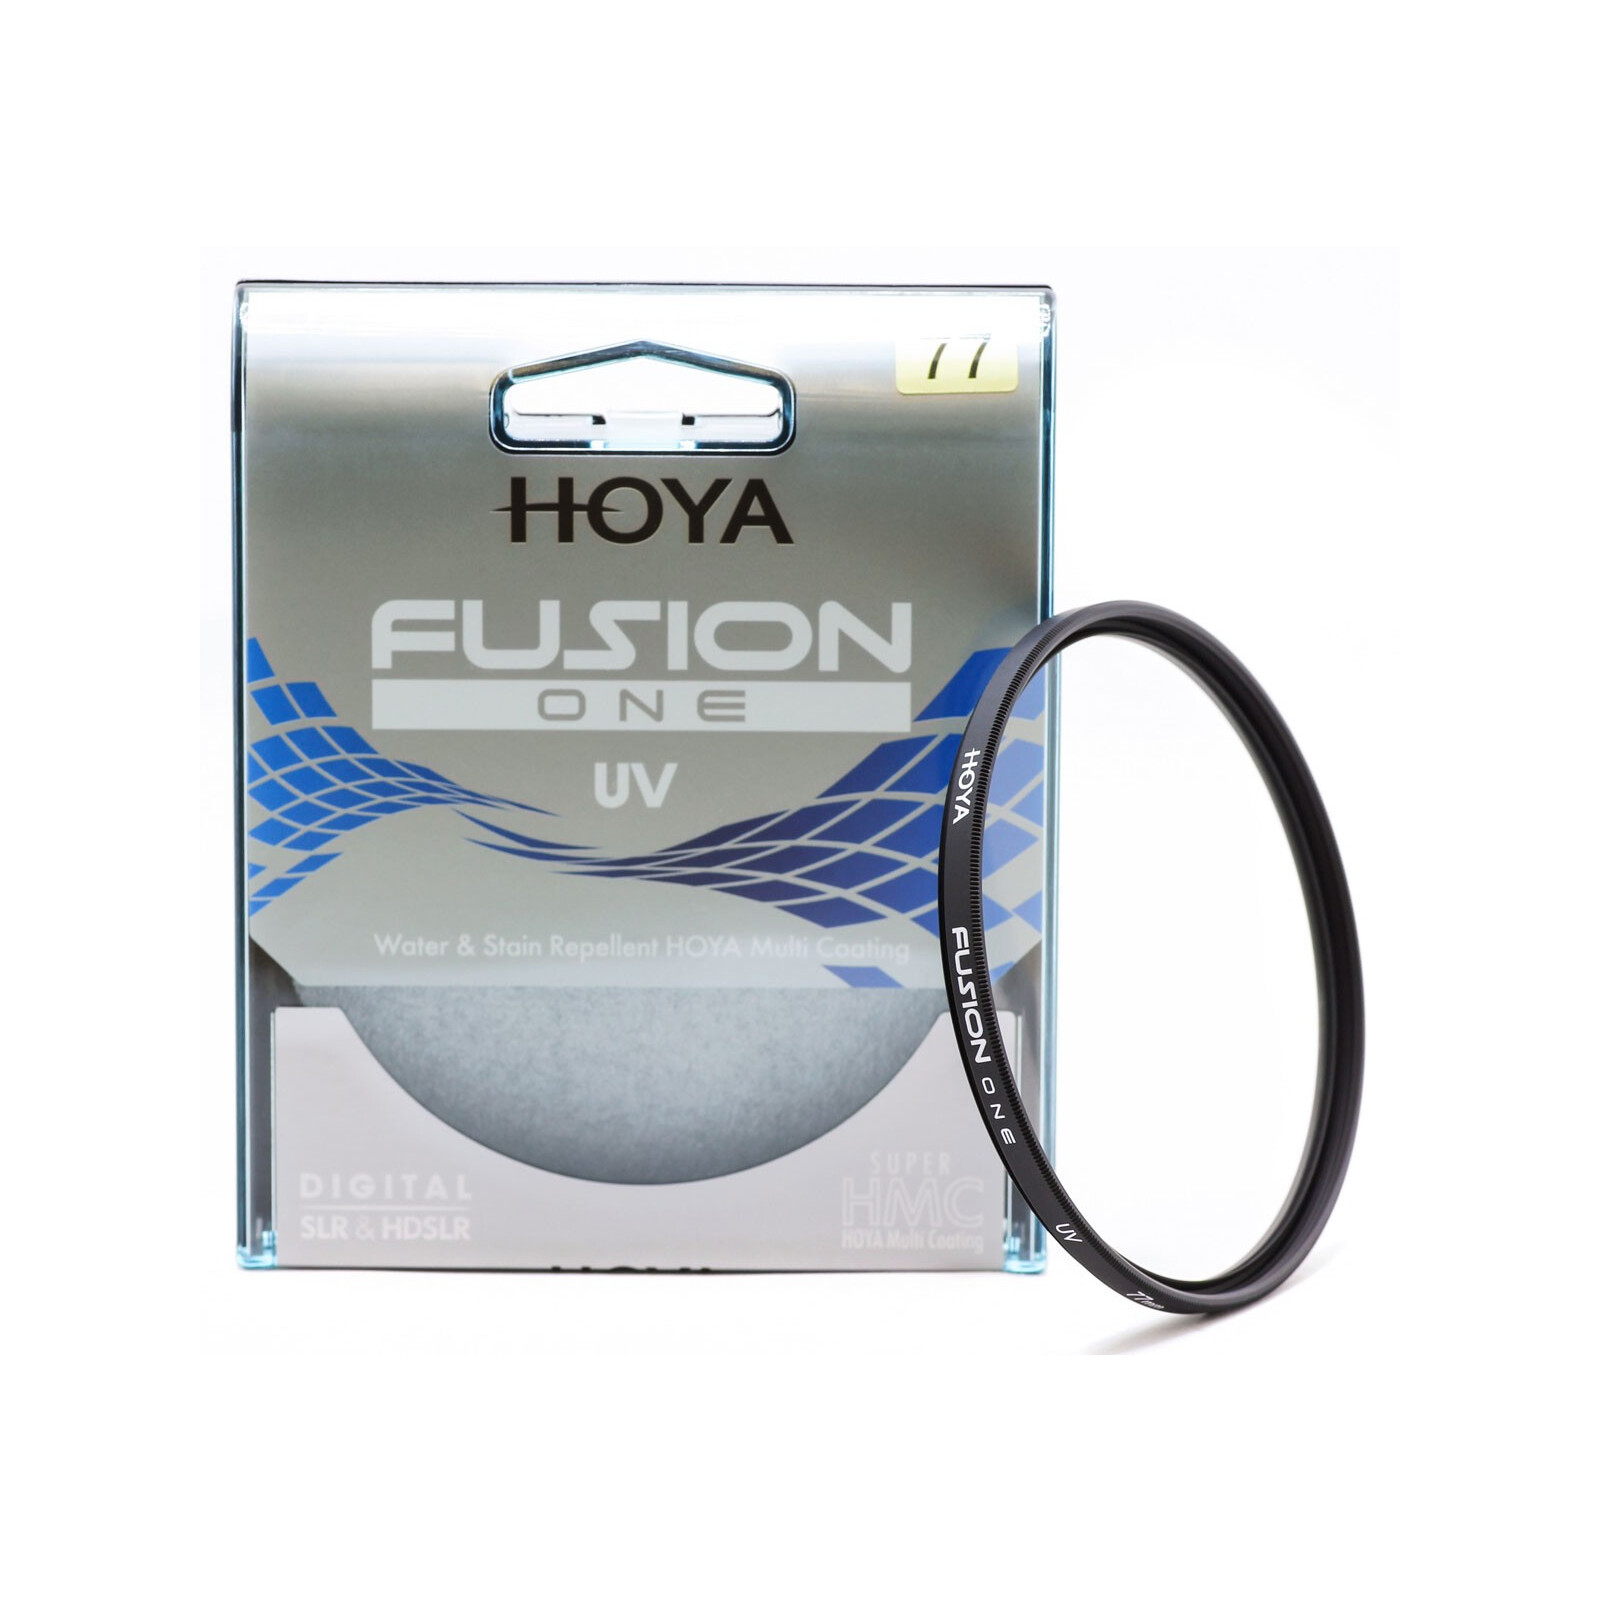 Hoya Fusion One UV